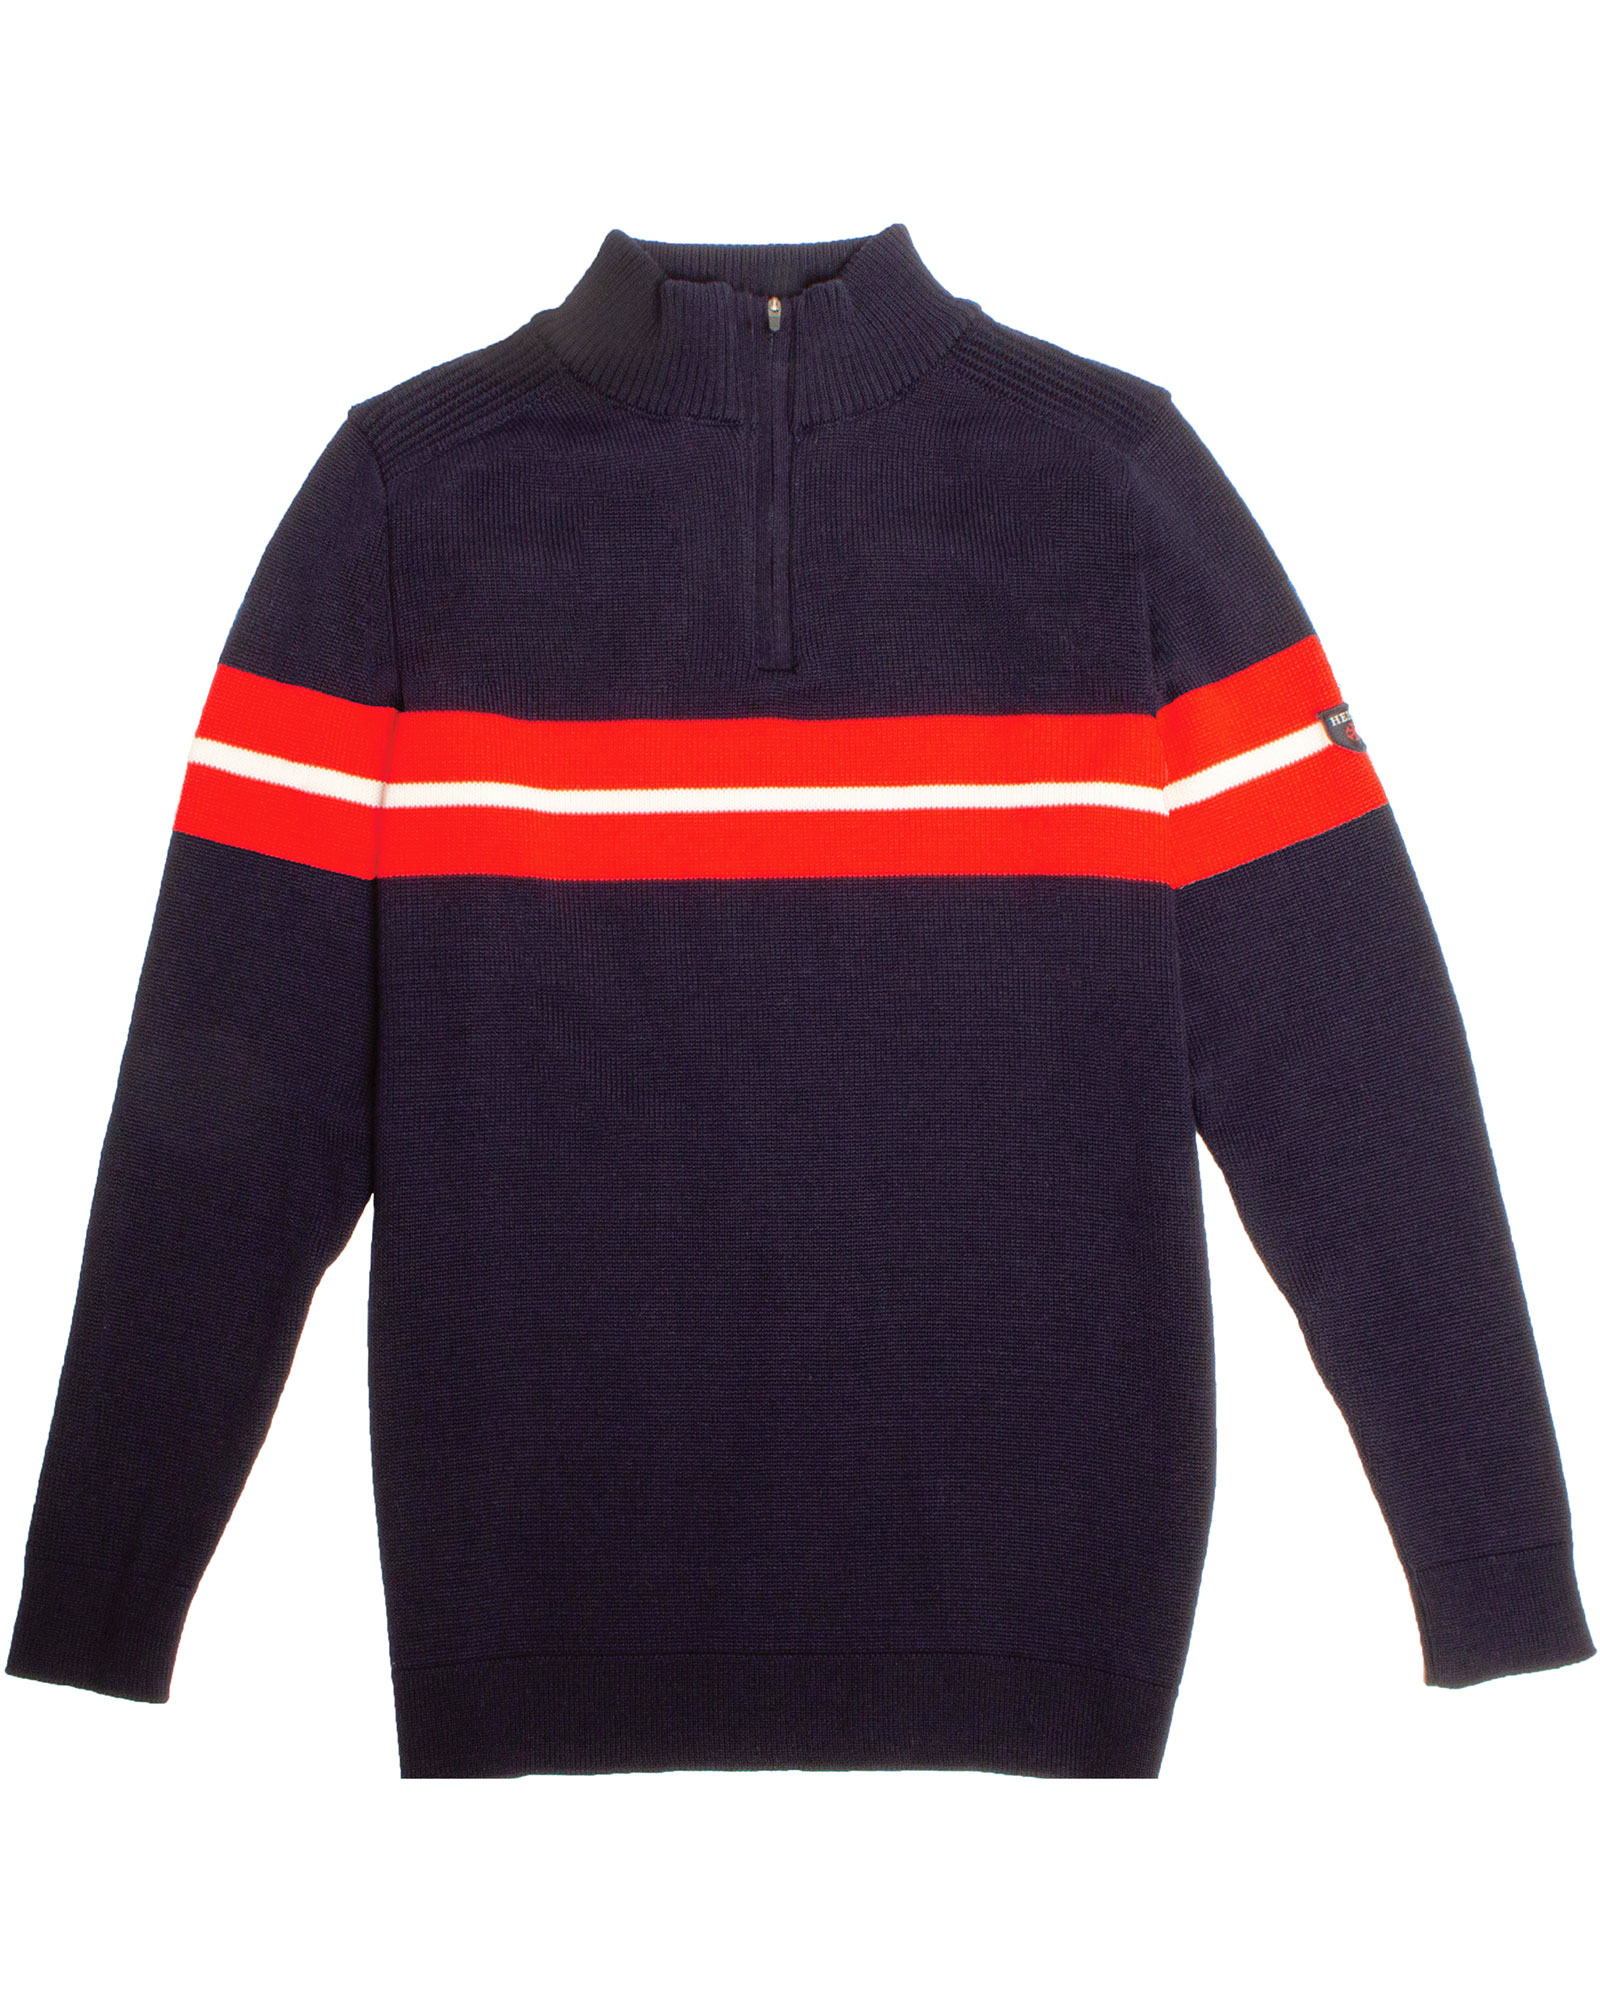 Henjl Carve Half Zip Men’s Merino Sweater - Navy/Snow/Red XL